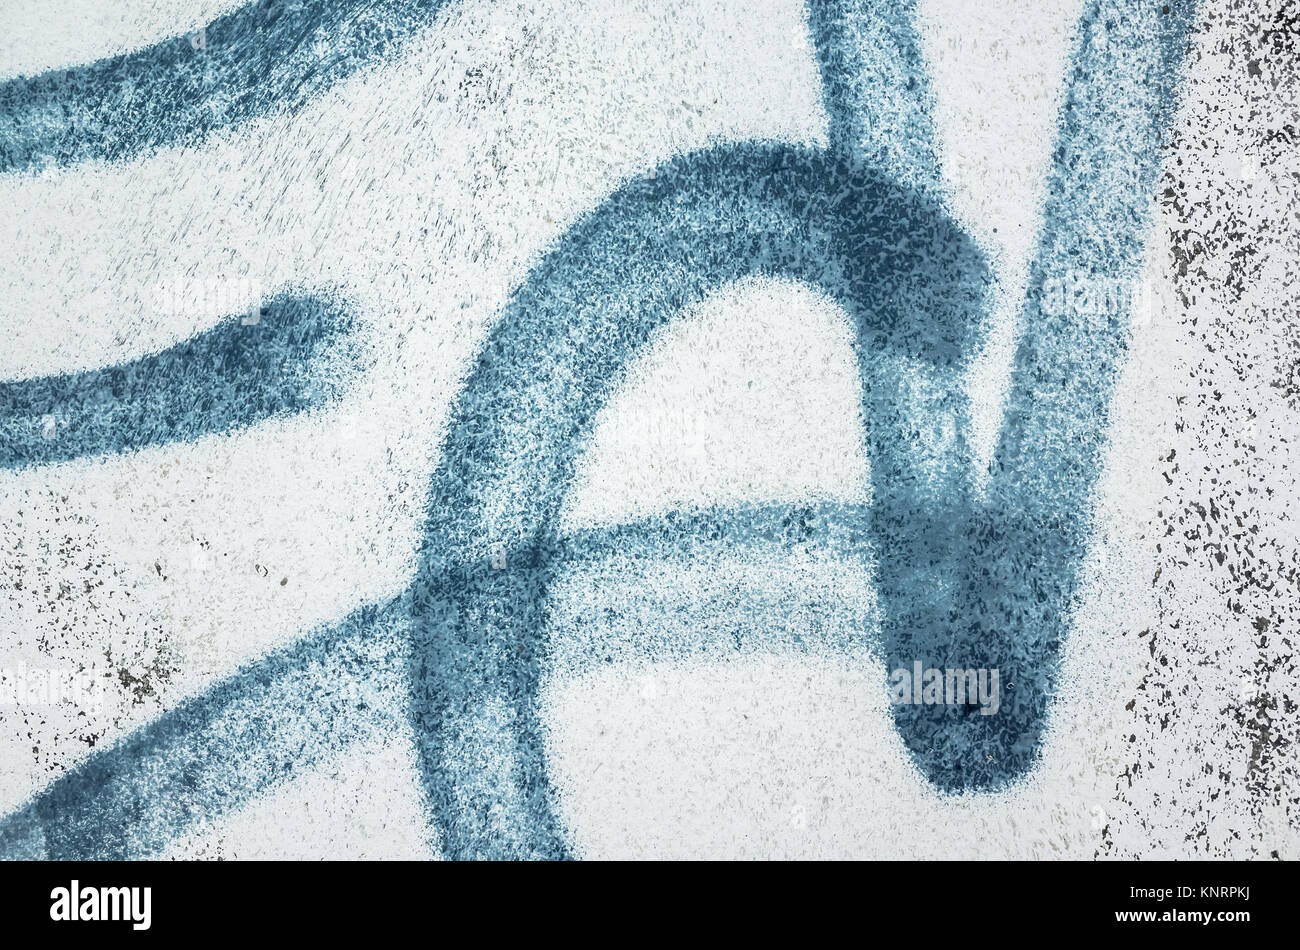 Abstract blue urban graffiti frammento sopra il vecchio bianco parete di calcestruzzo Foto Stock